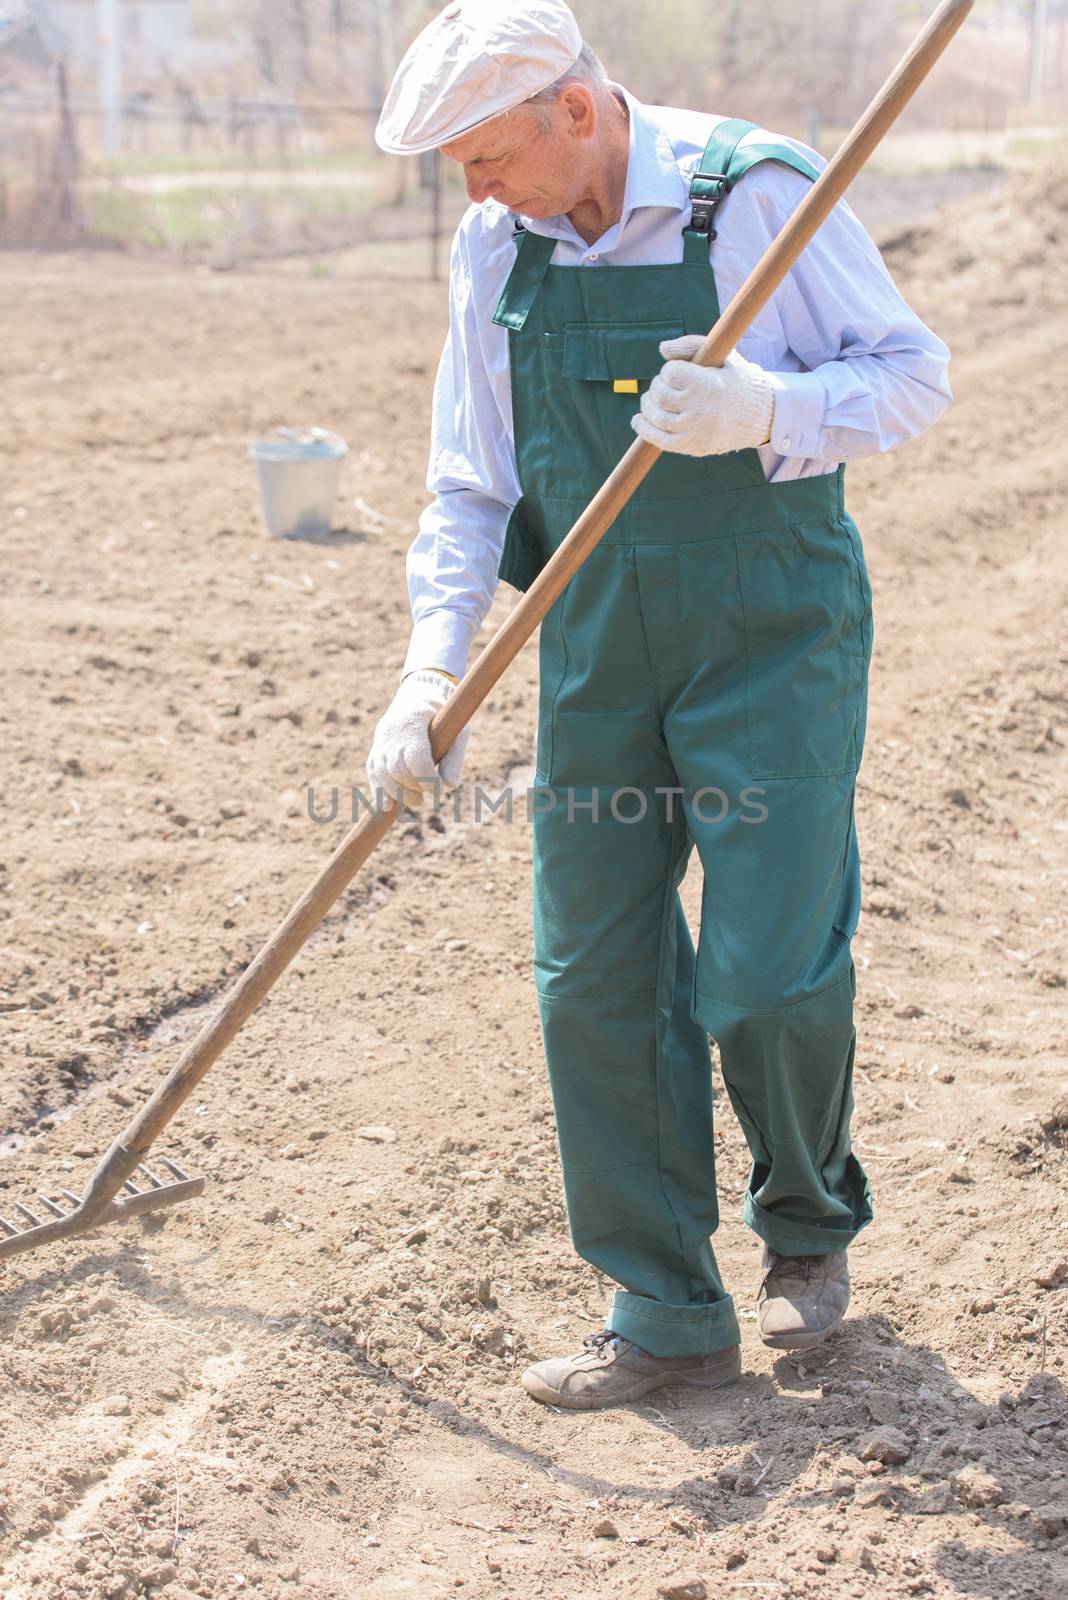 Farmer or employee working in the field.